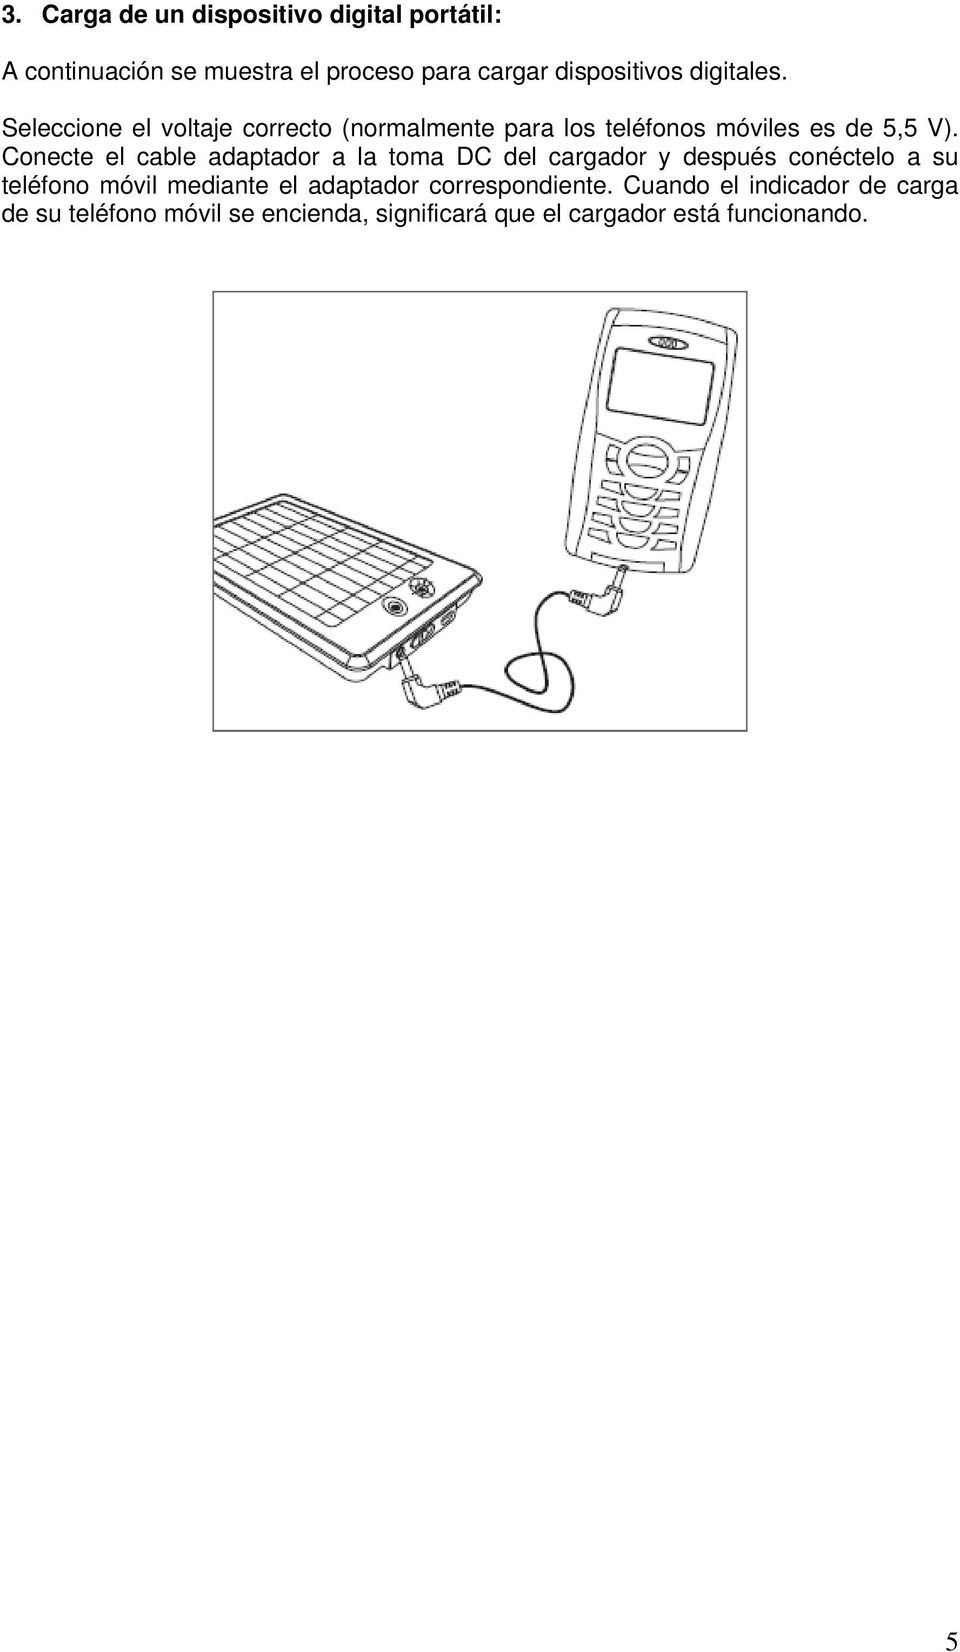 Conecte el cable adaptador a la toma DC del cargador y después conéctelo a su teléfono móvil mediante el